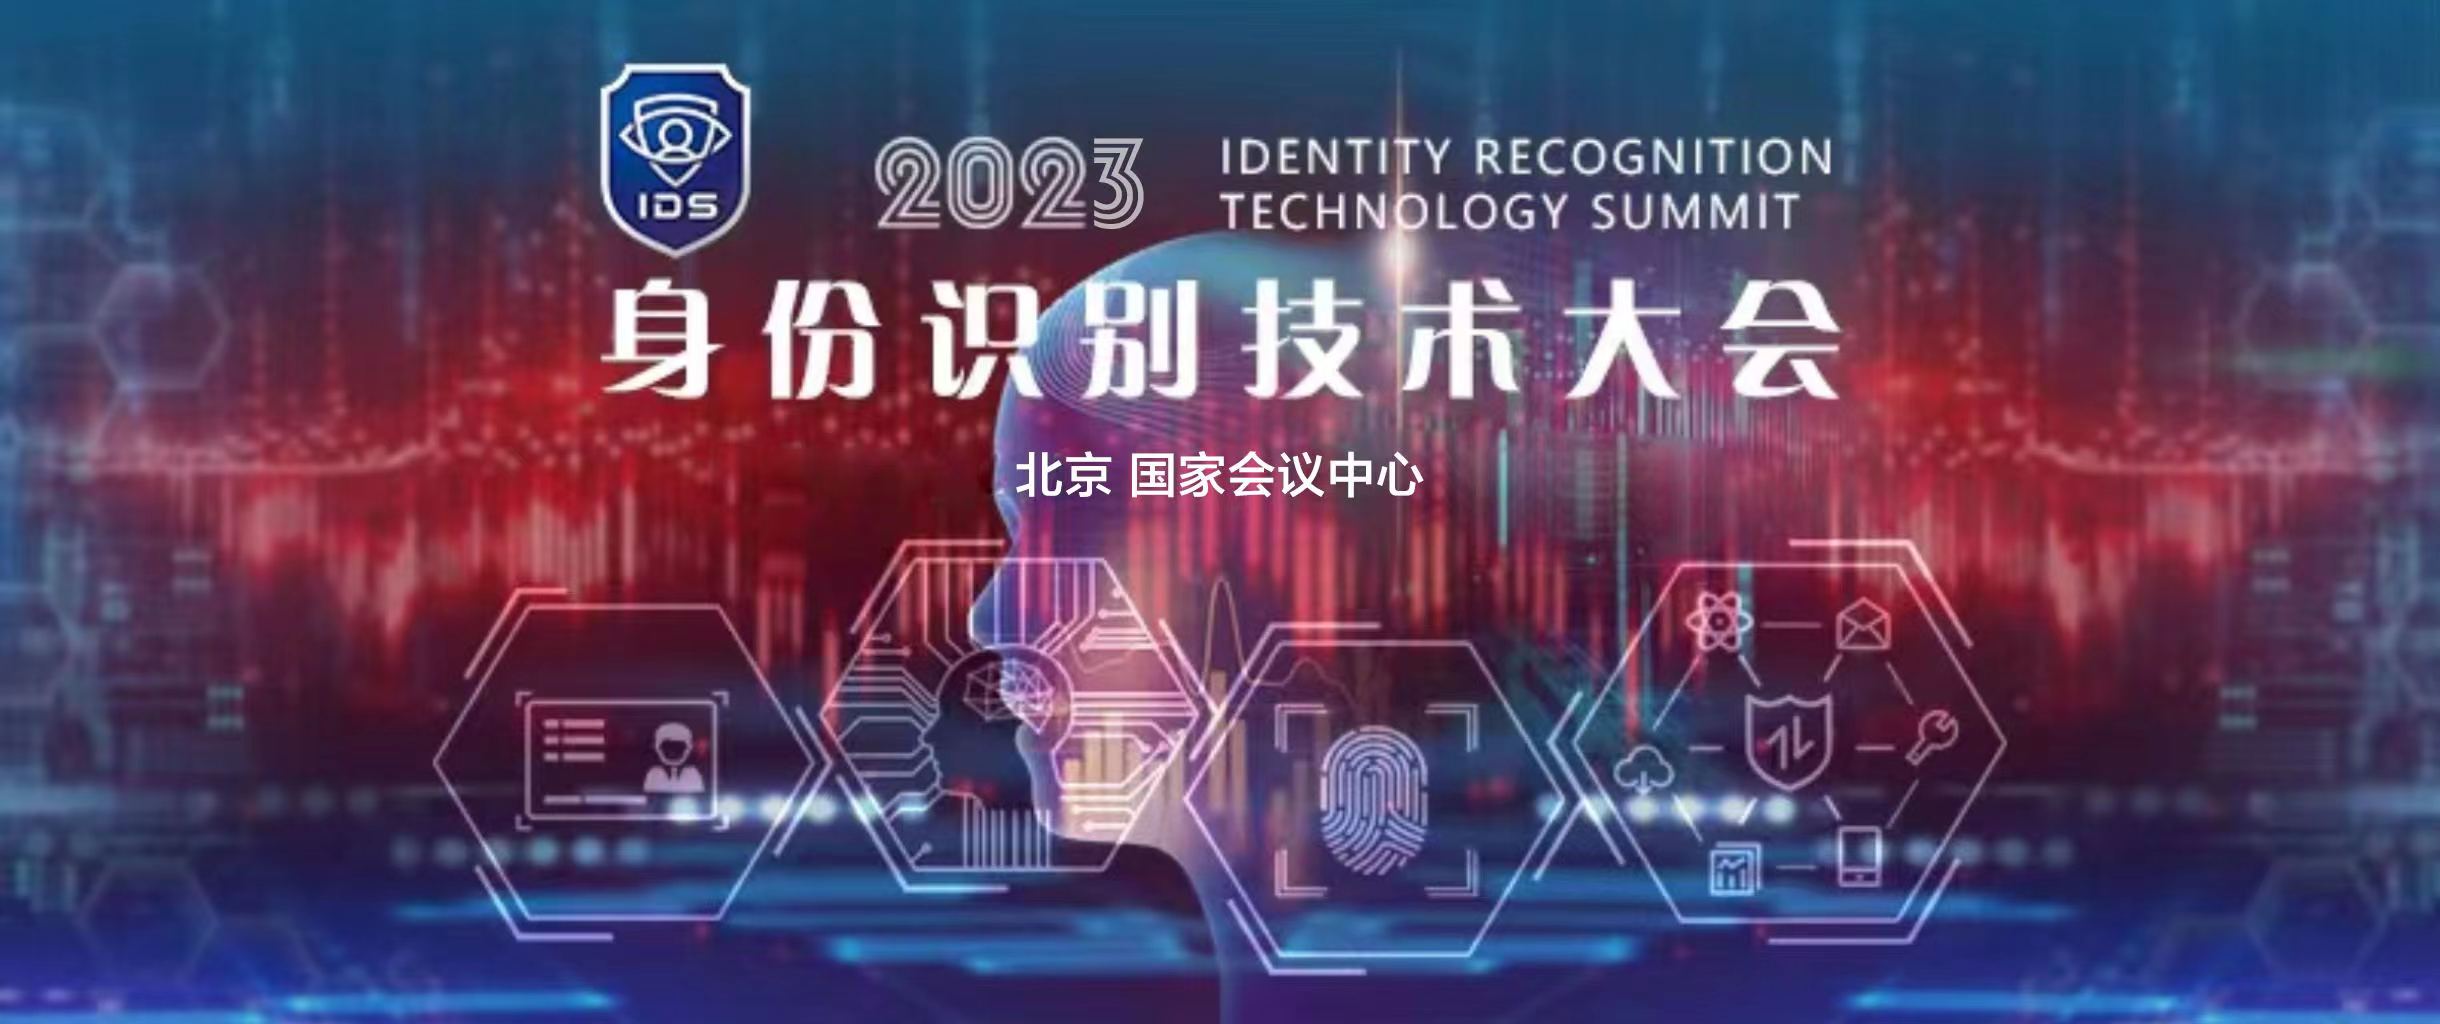 IDS 身份识别技术大会 2023